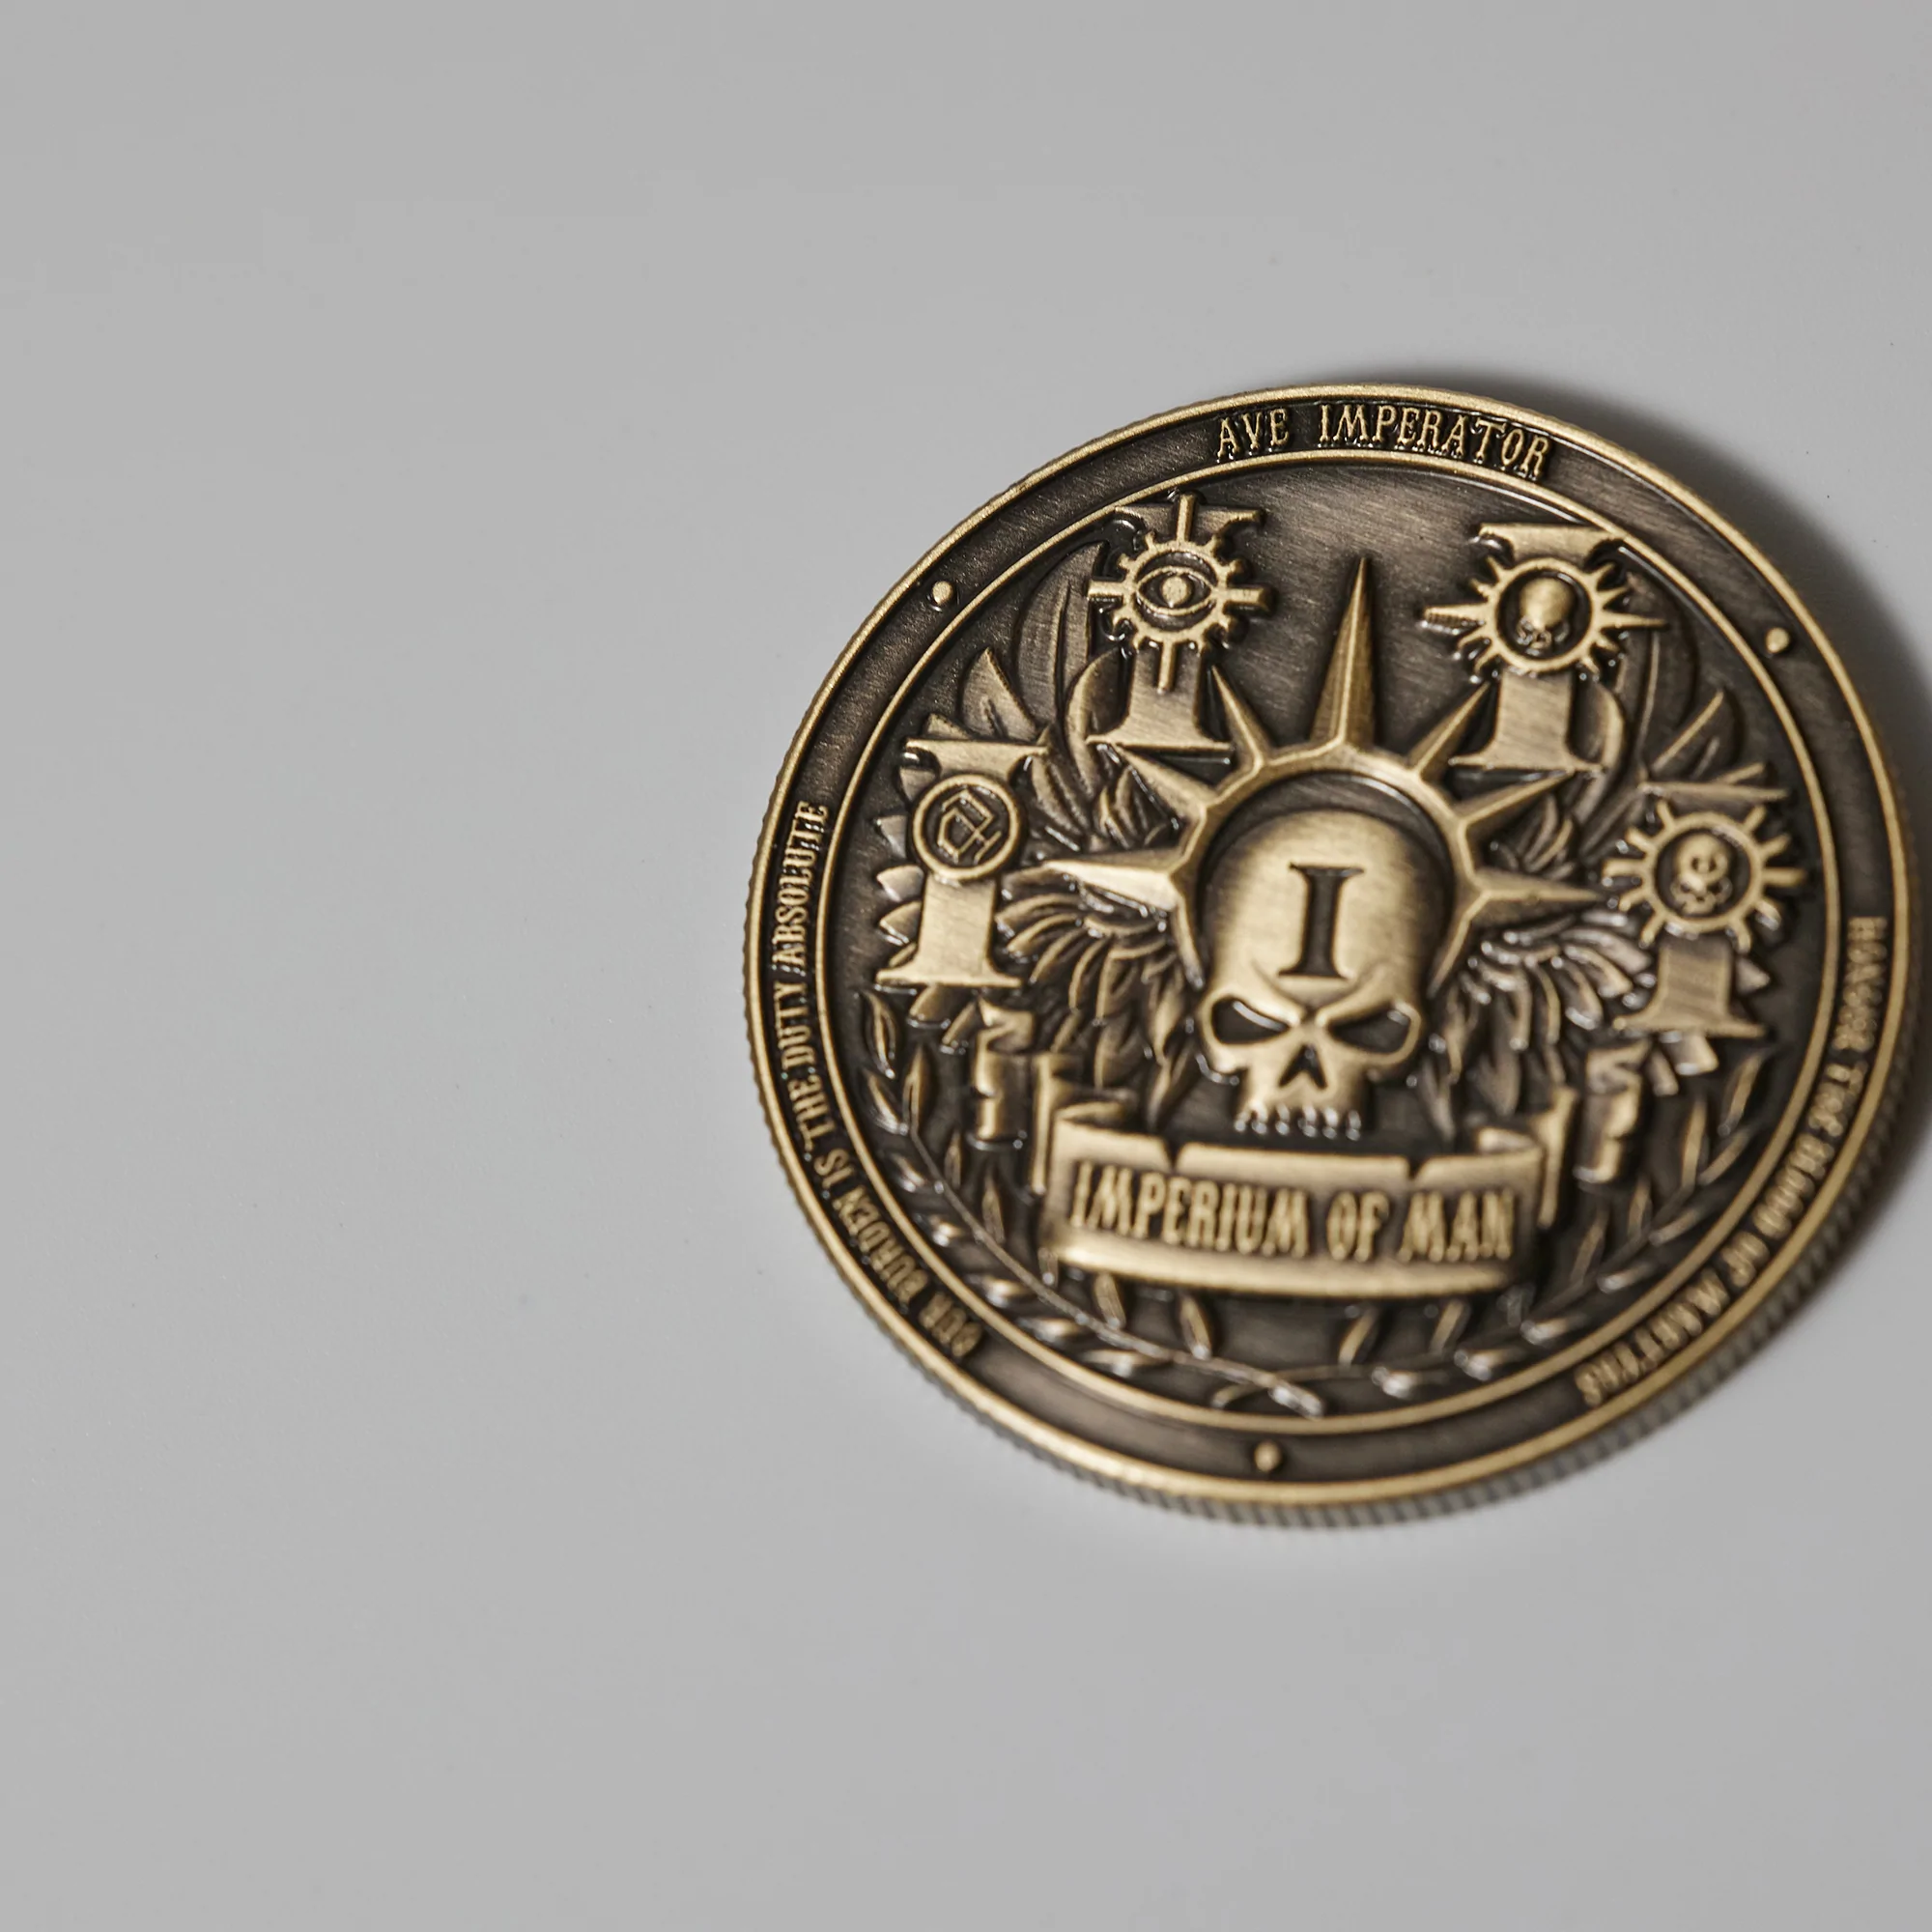 Collectible Coin: Stormcast Eternals-1659975035.jpg